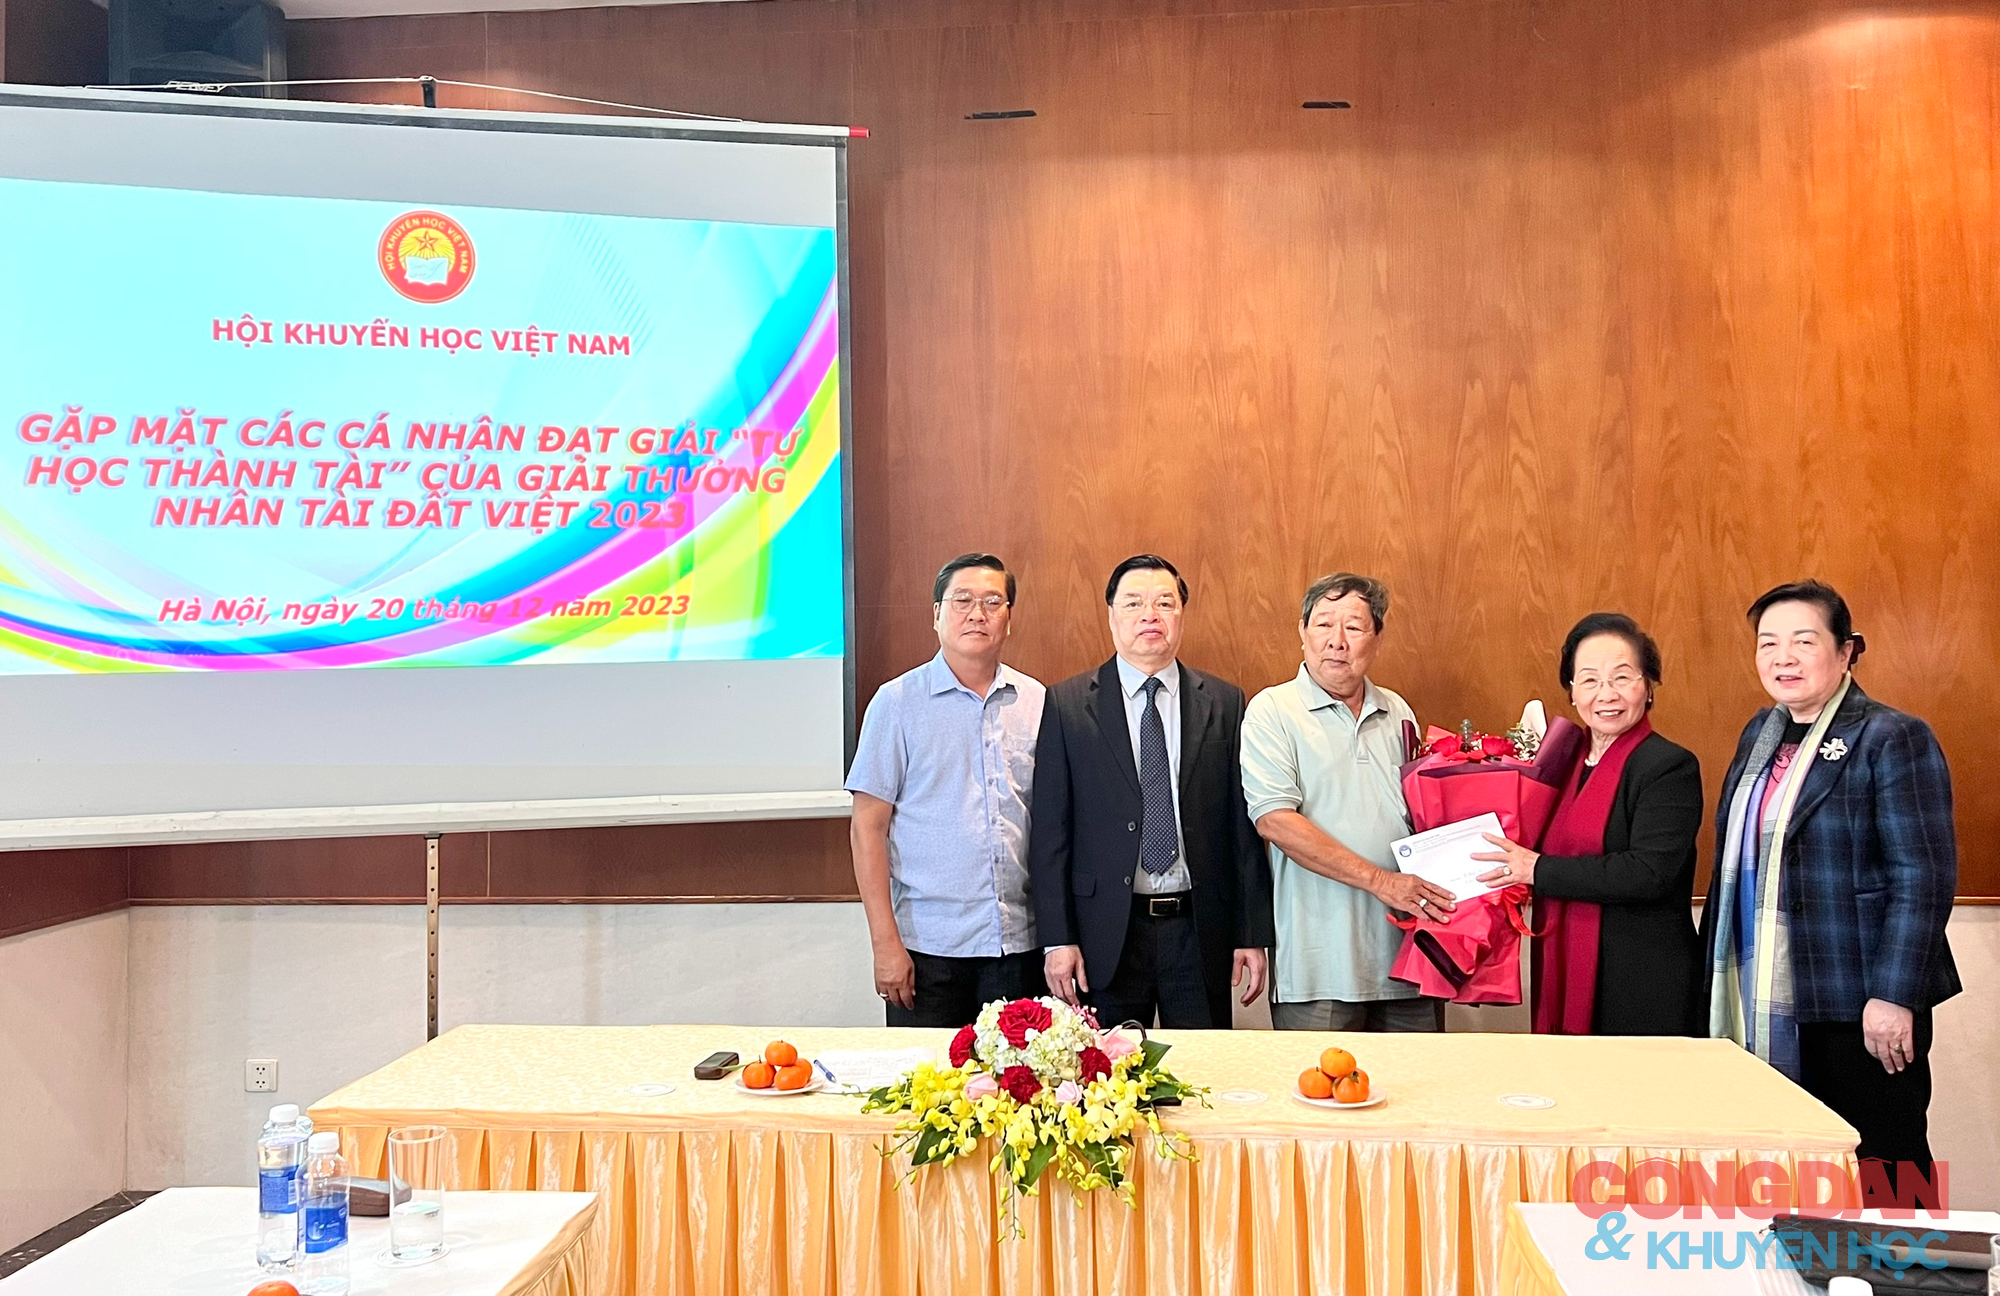 Gặp mặt các cá nhân đạt giải Tự học thành tài của Giải thưởng Nhân tài Đất Việt 2023- Ảnh 8.